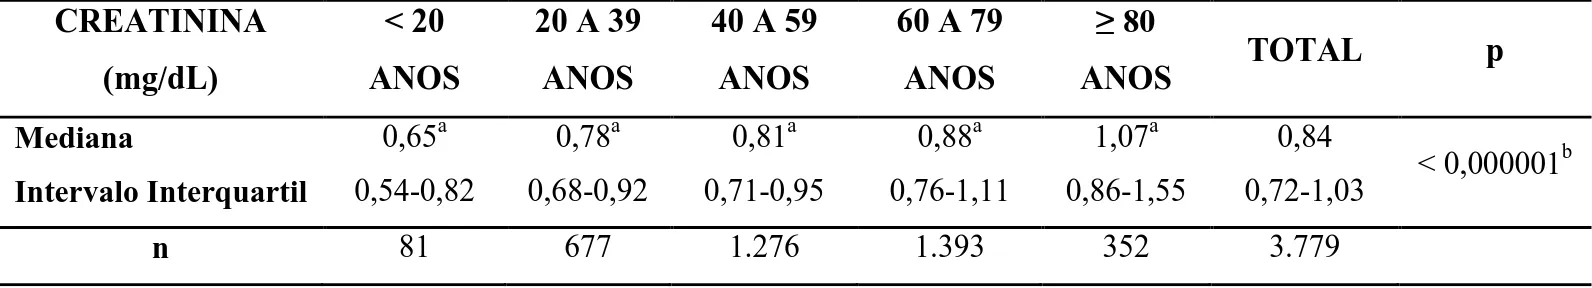 Tabela  3:  Distribuição  dos  resultados  de  creatinina  sérica  (mg/dL)  por  faixa  etária  nos  indivíduos  com  dosagens  concomitantes  de  creatinina,  25-hidroxivitamina  D  (25OHD)  e  paratormônio (PTH), no ano de 2012